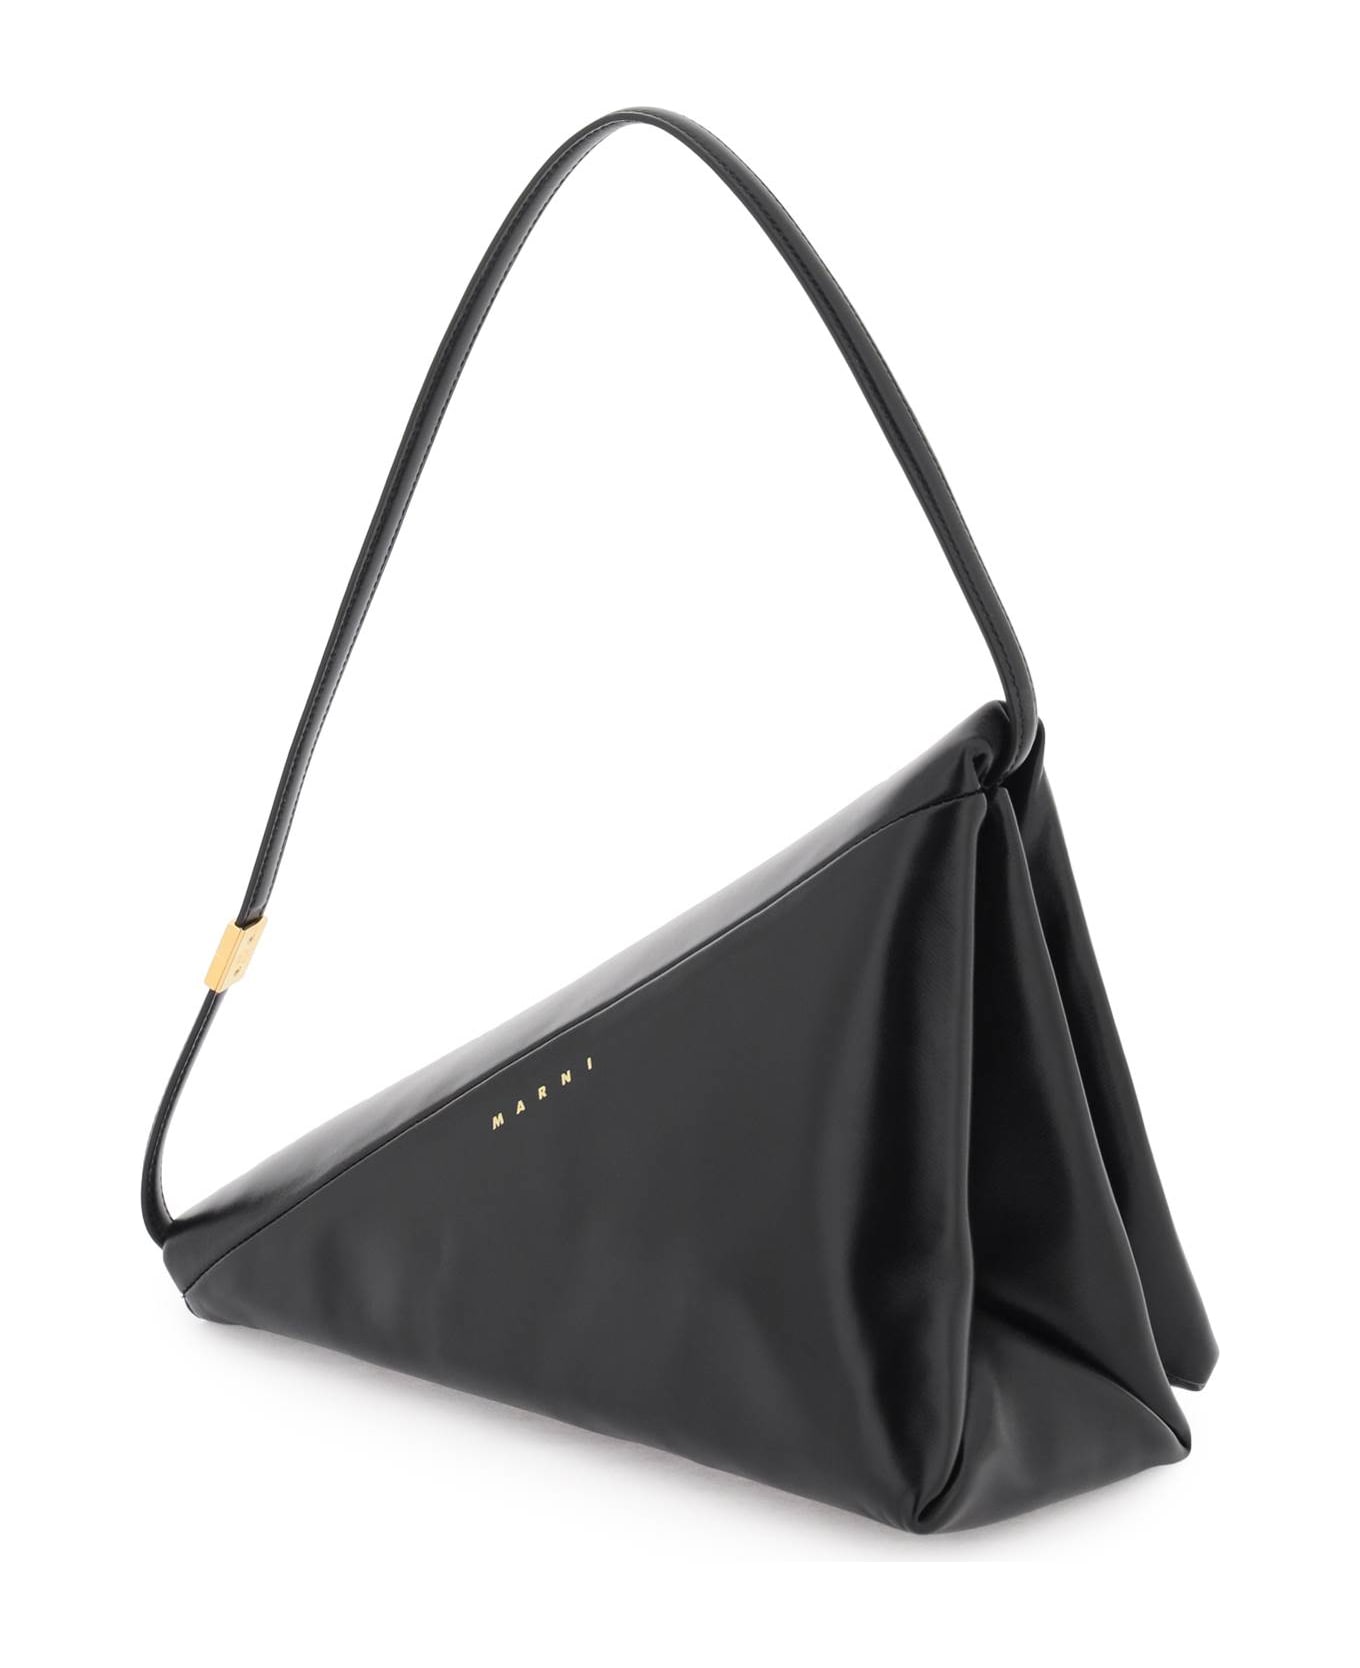 Marni Leather Prisma Triangle Bag Marni - BLACK トートバッグ